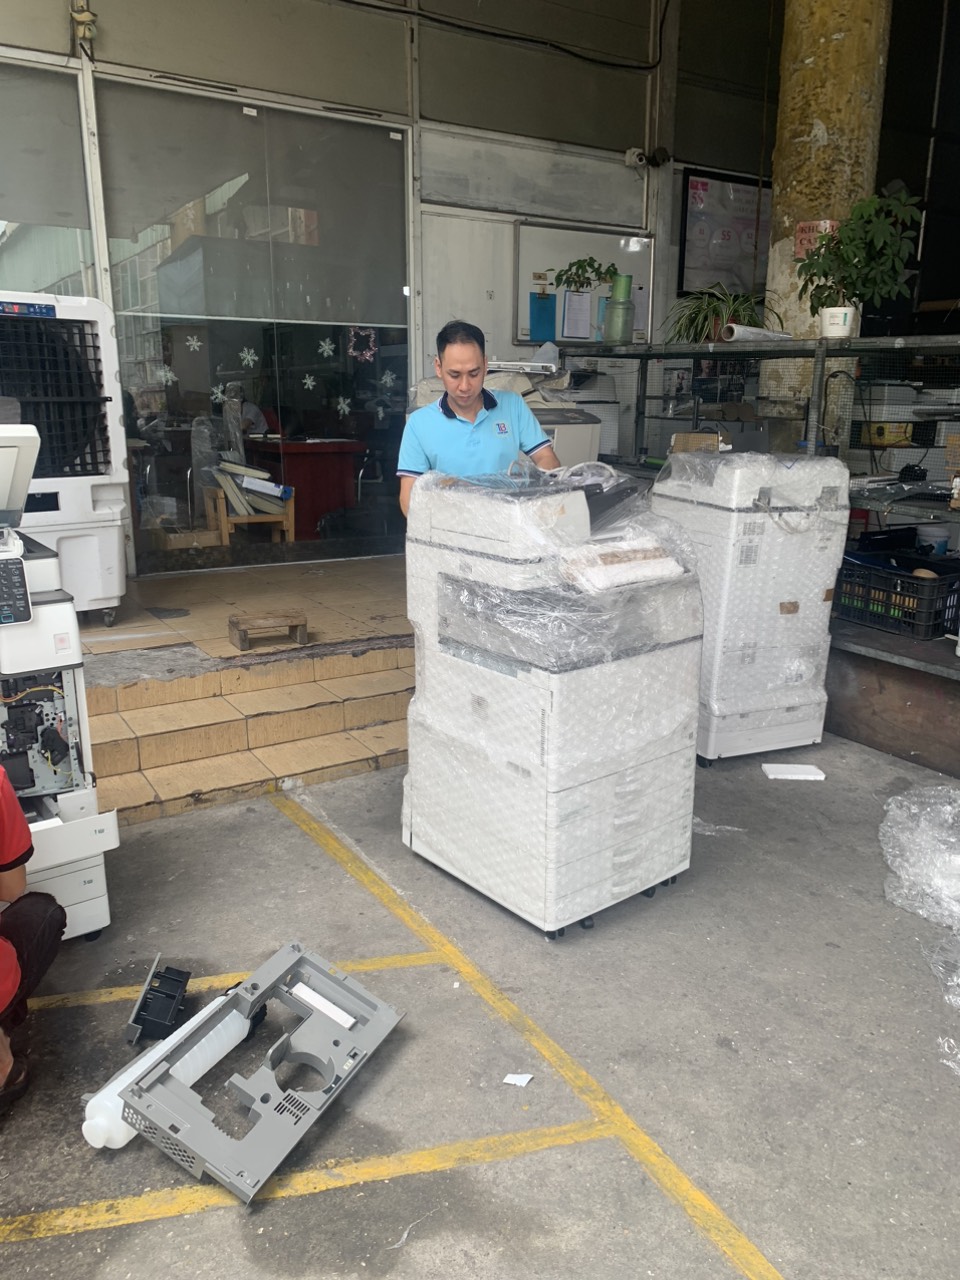 ( Khuyến Mại) Cho thuê máy photocopy tại  Việt Trì , Phú Thọ chỉ từ 500k